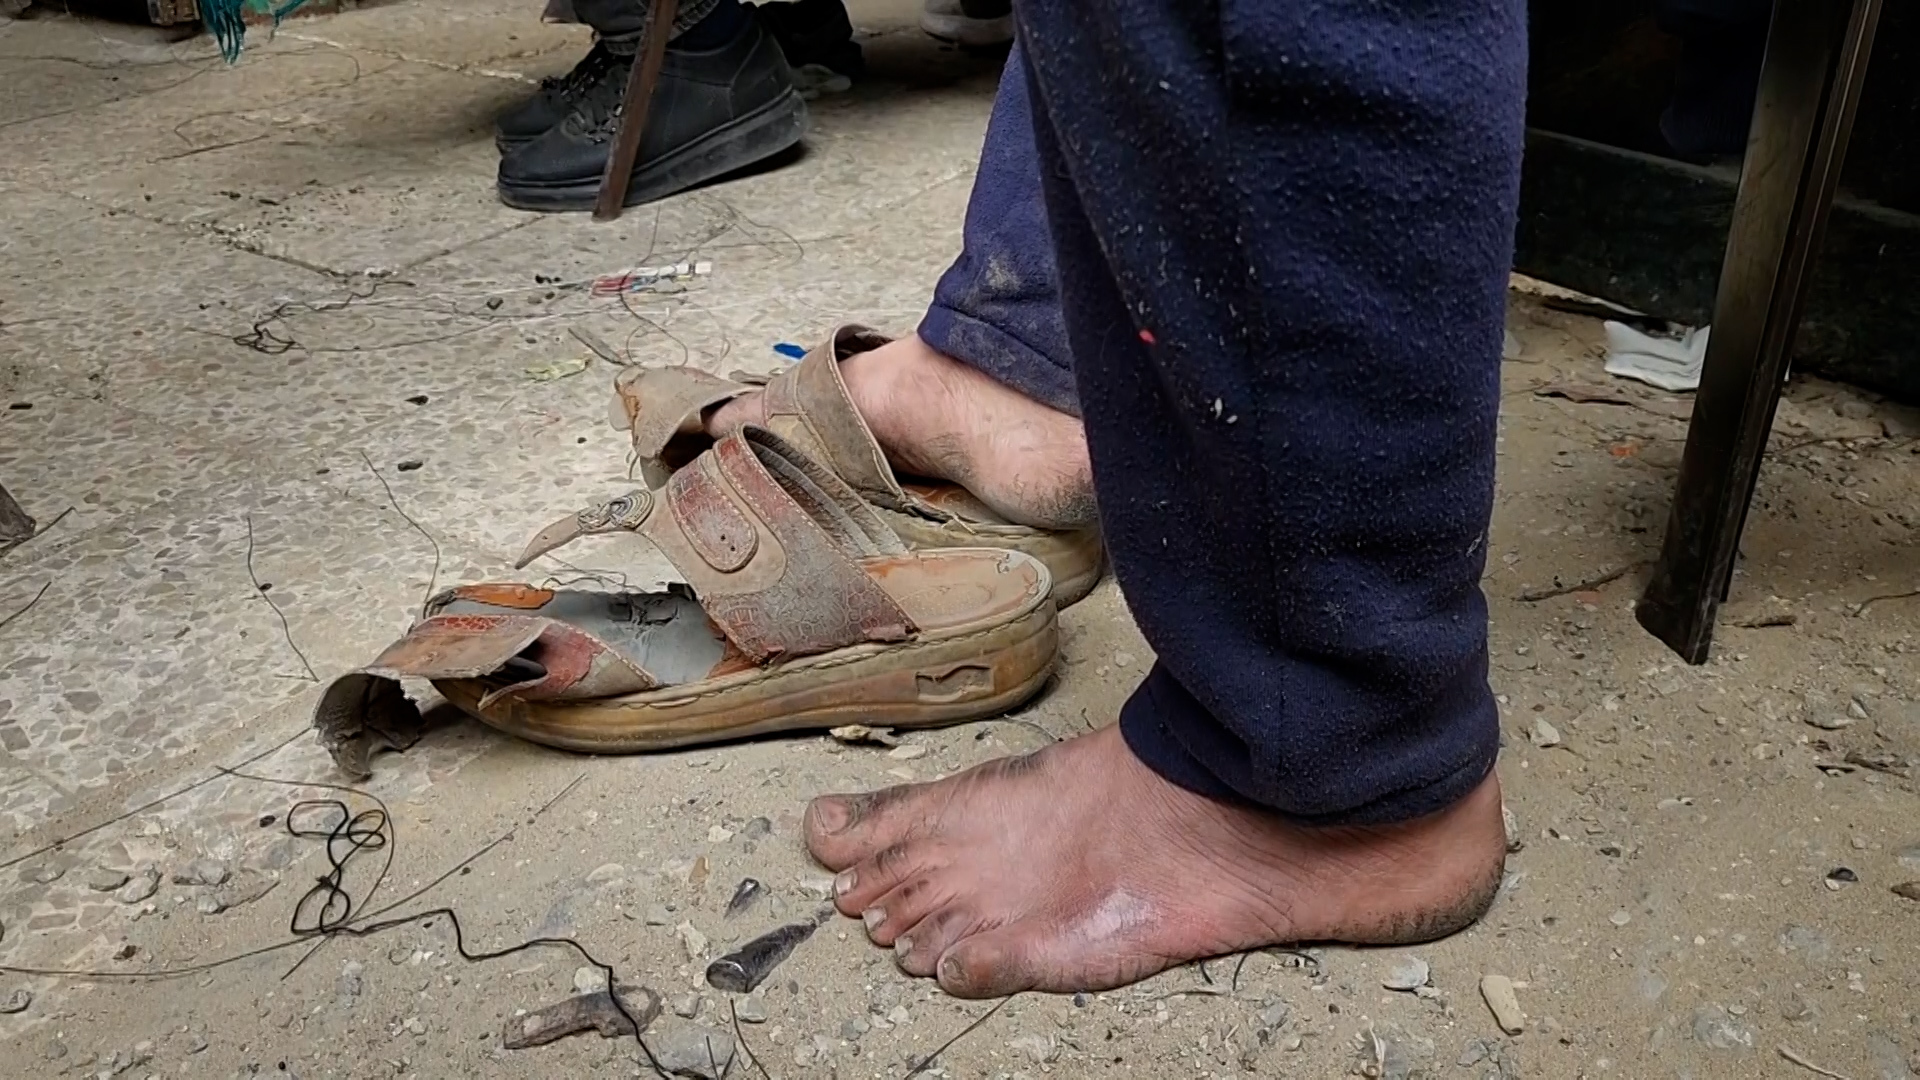 النزوح على عجالة يجبر الفلسطينيين على السير بأحذية ممزقة | البرامج – البوكس نيوز